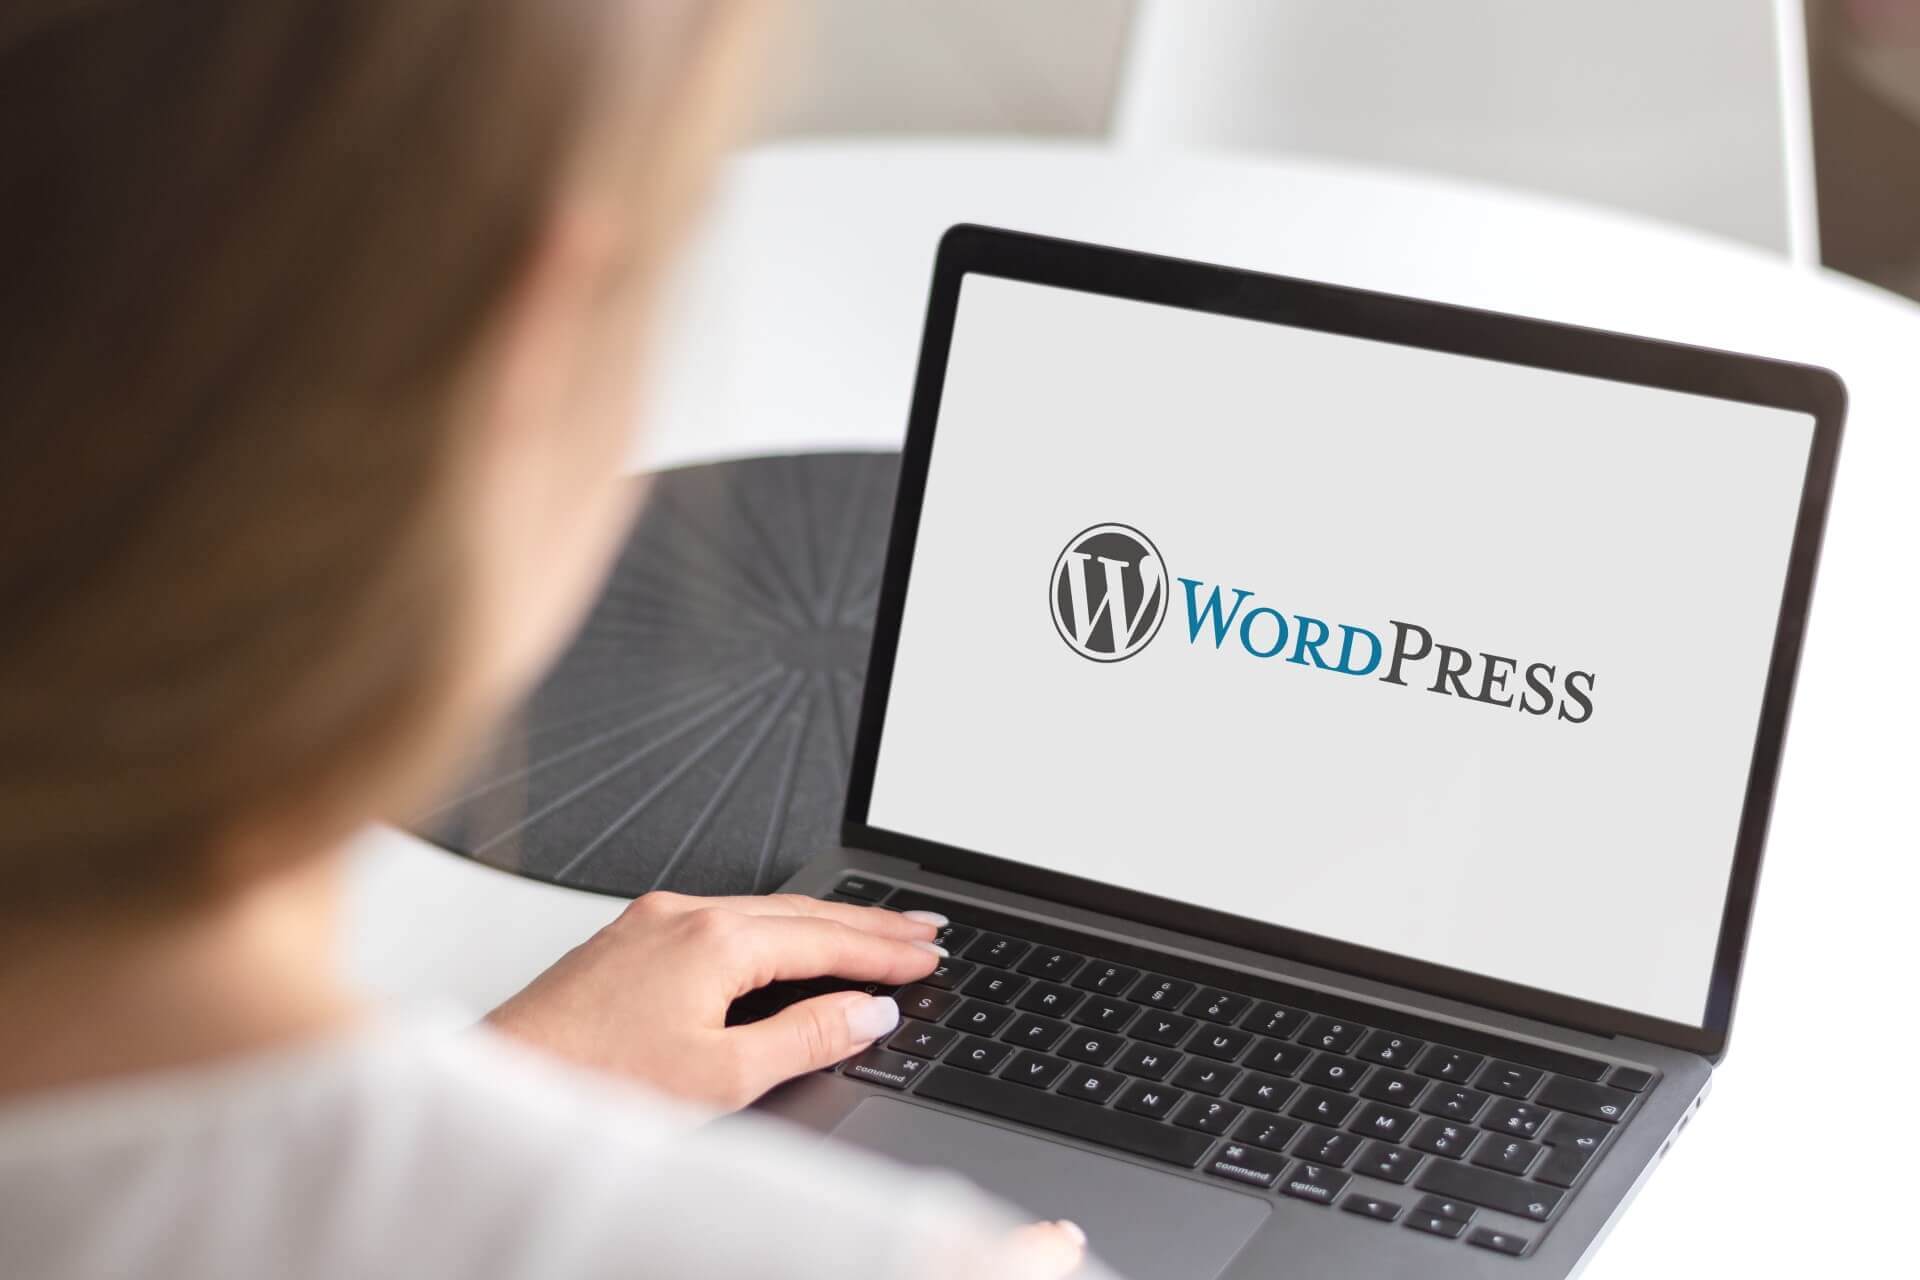 Personne utilisant son ordinateur portable avec le logo WordPress en fond